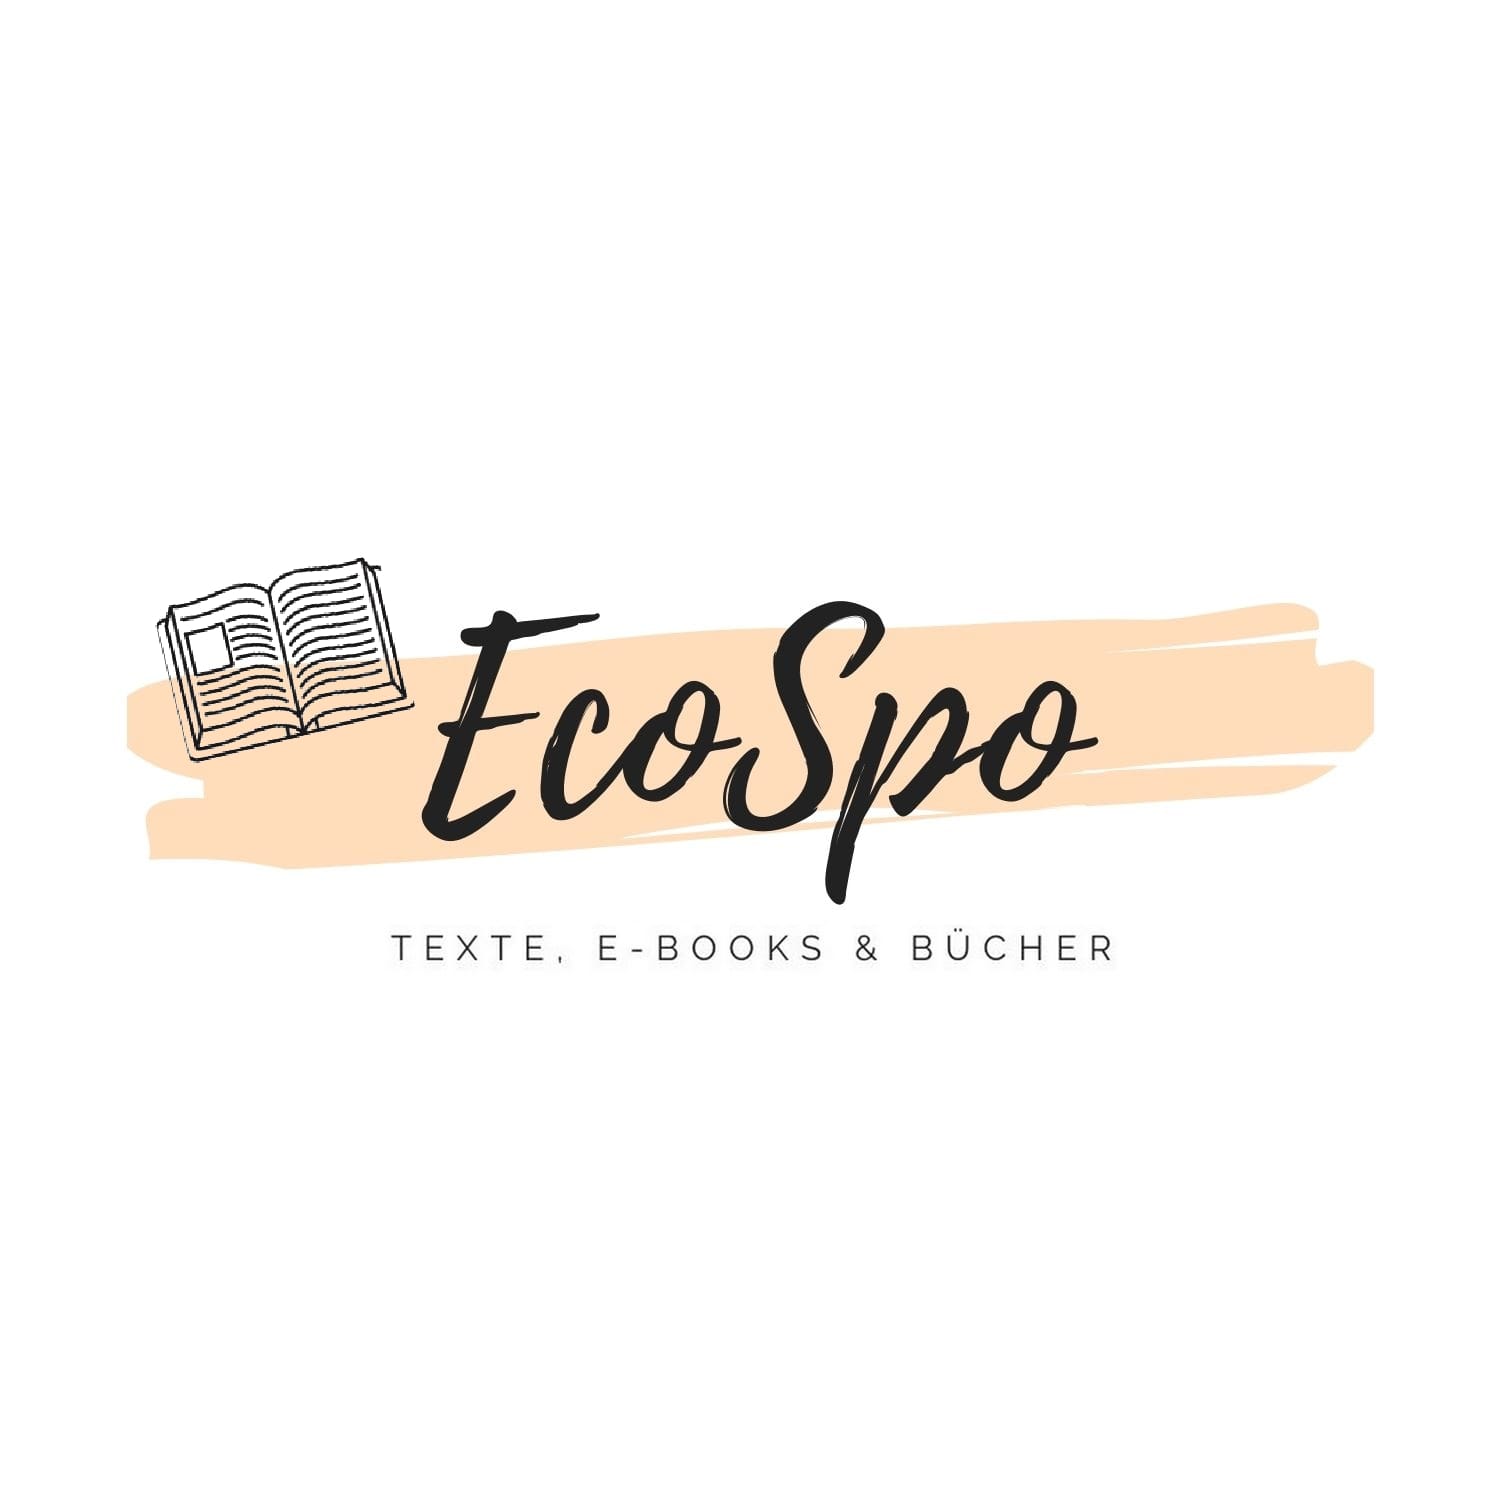 Milka Gostovic Texter (EcoSpo Texte, E-Books, Bücher) Logo